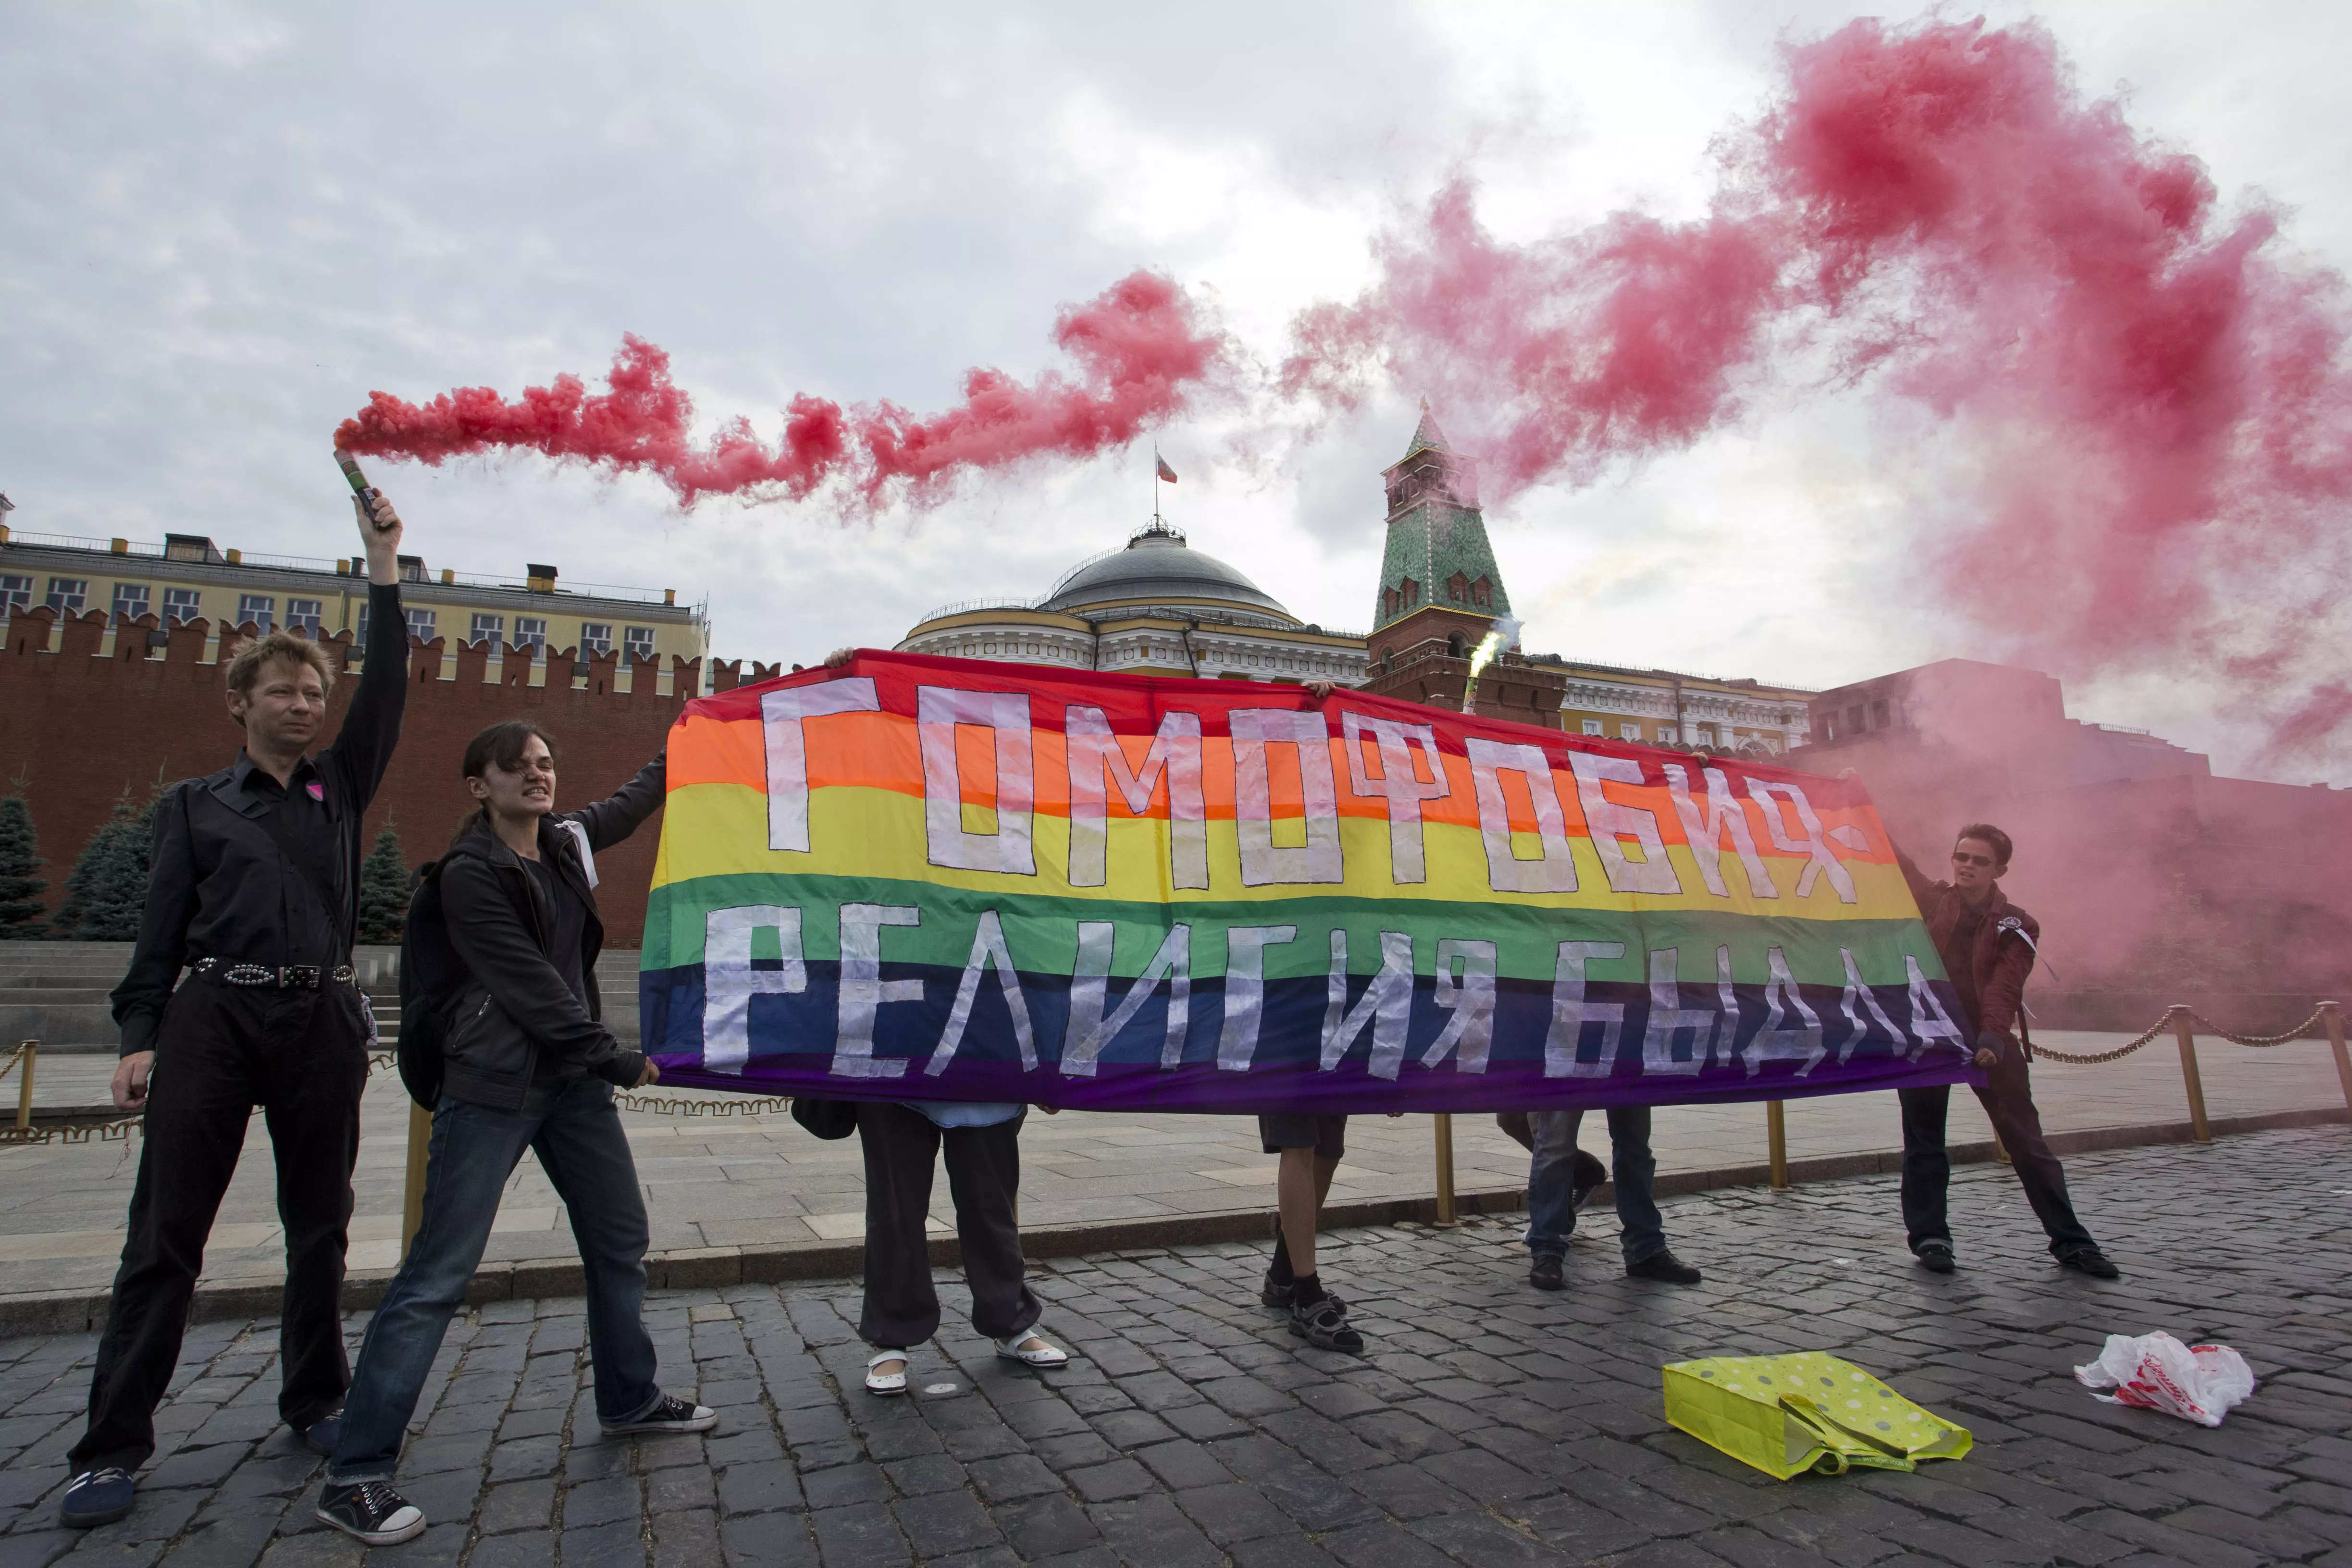 הפגנה למען זכויות להט"ב במוסקבה, 2013